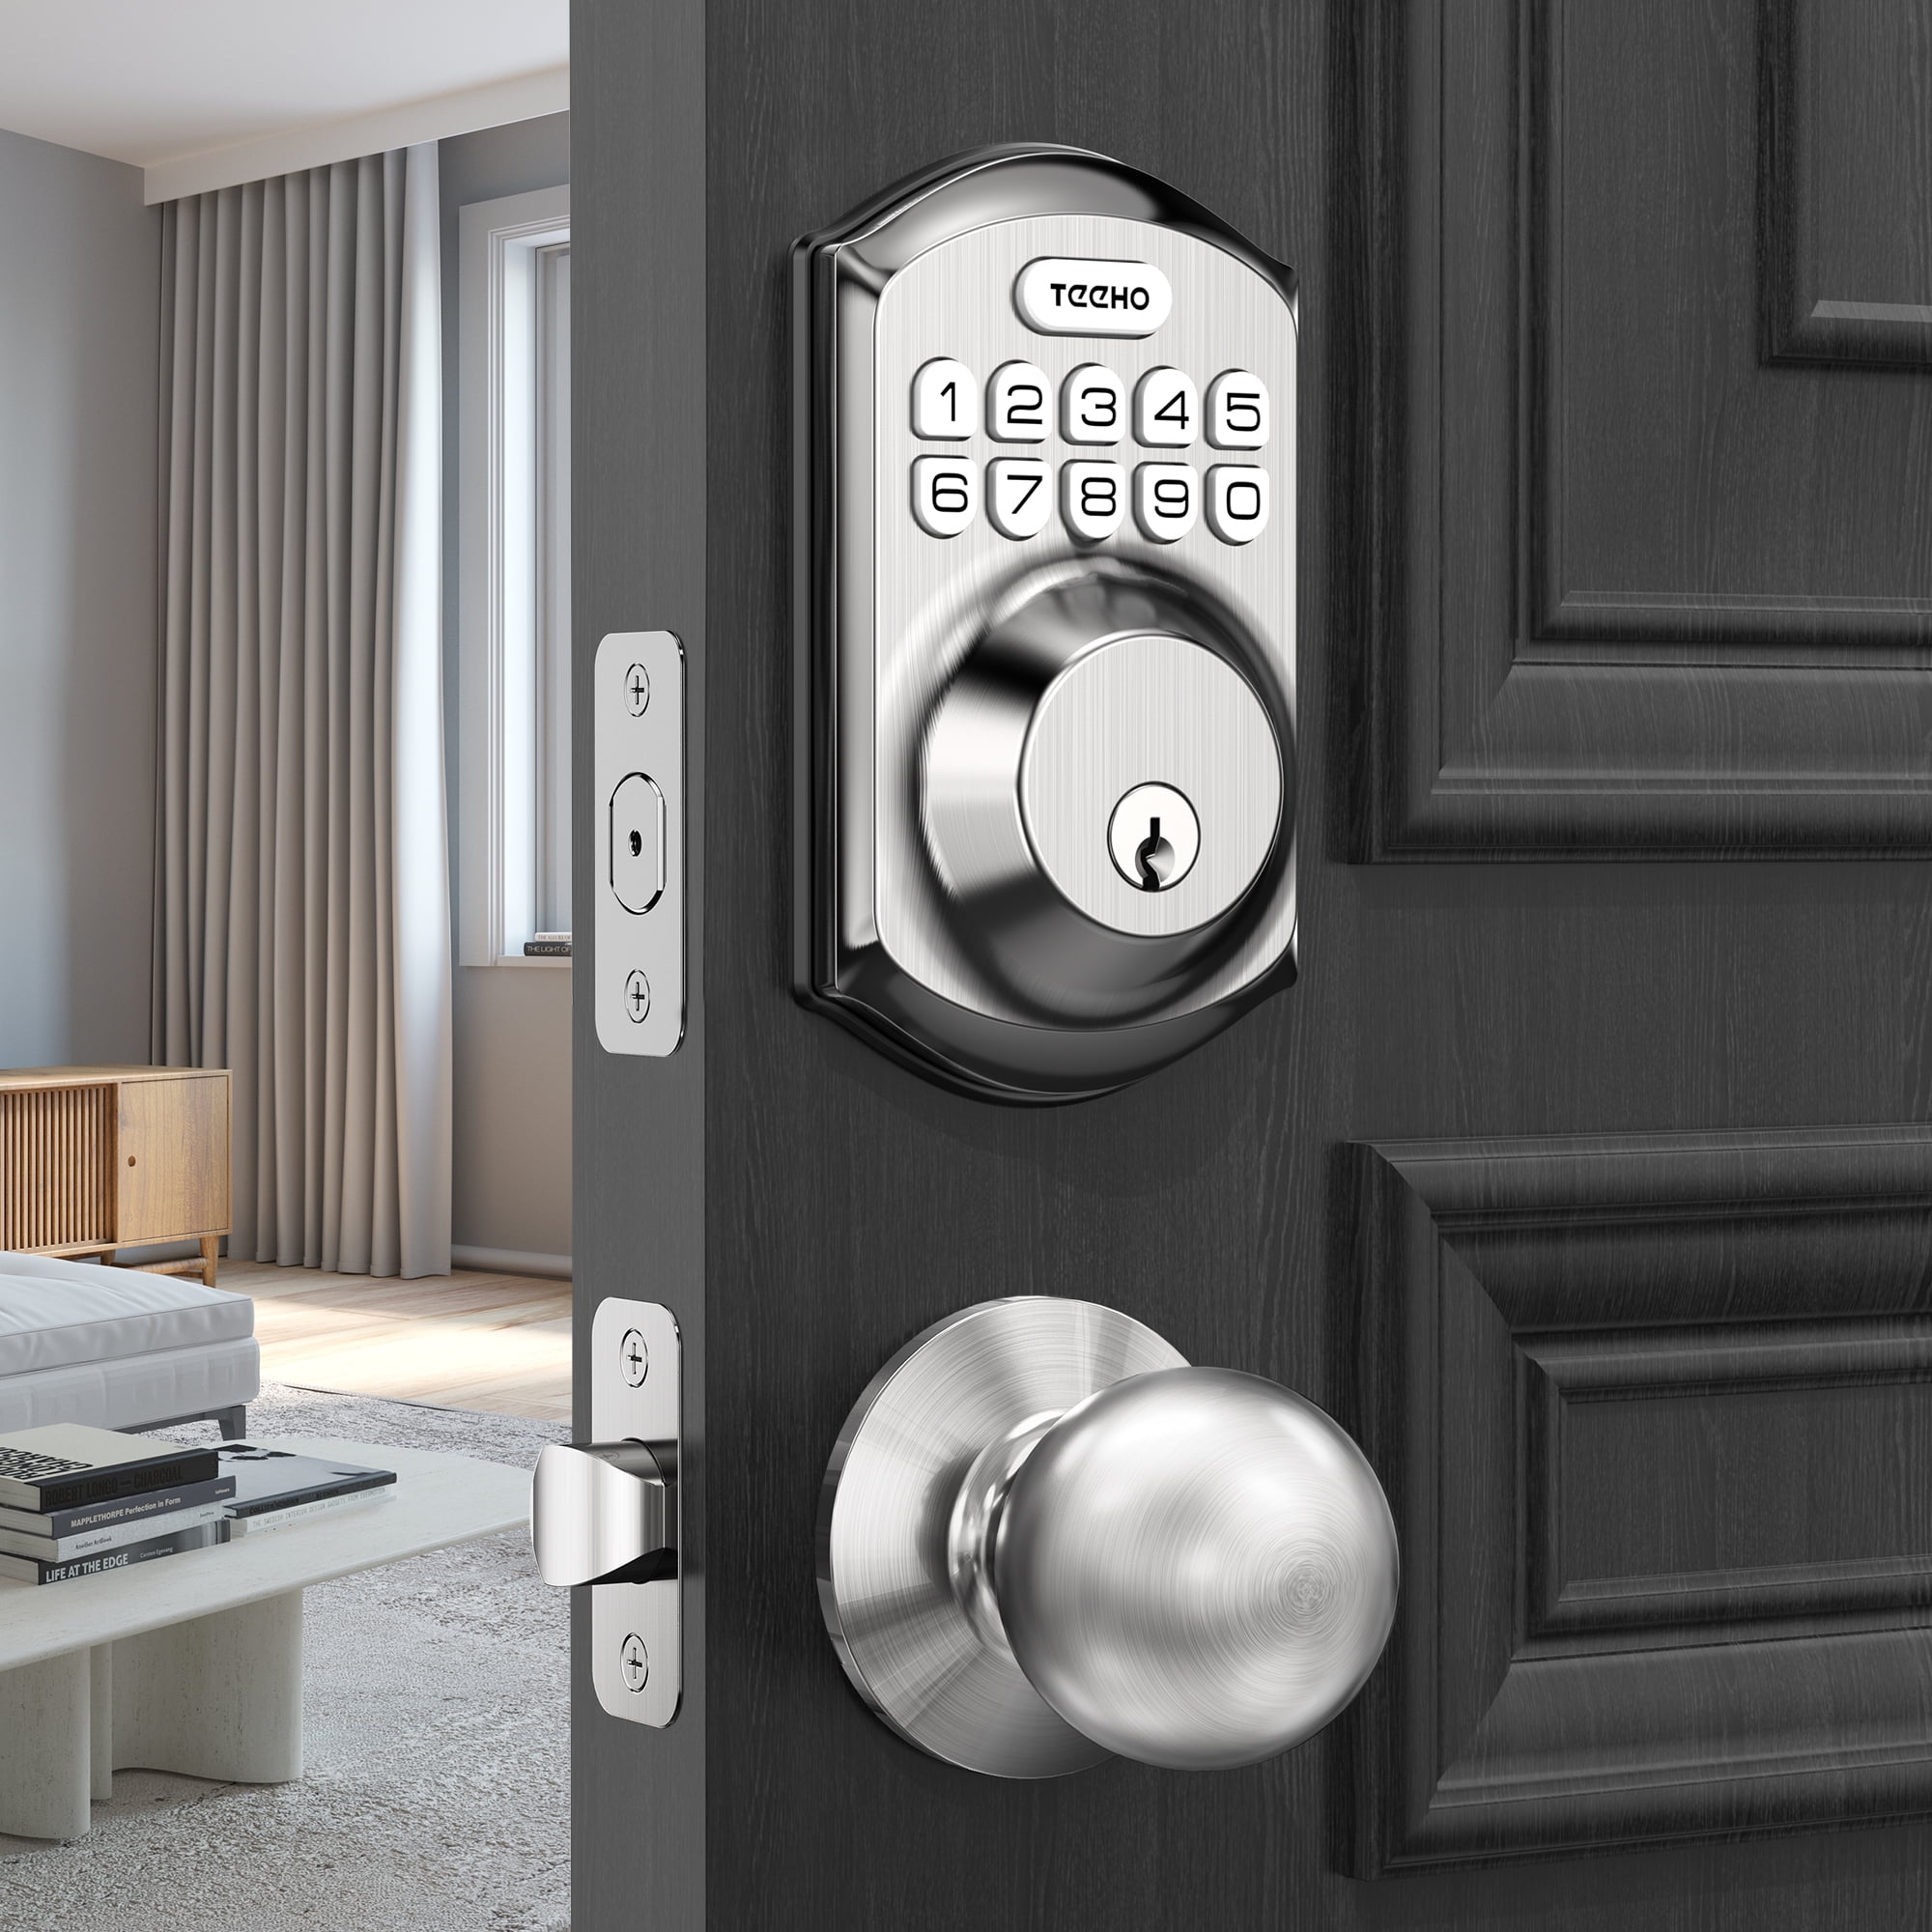 TEEHO Keyless Entry Keypad Smart Electronic Deadbolt Door Lock with Door Knobs Handles for Front Door in Satin Nickel Finish